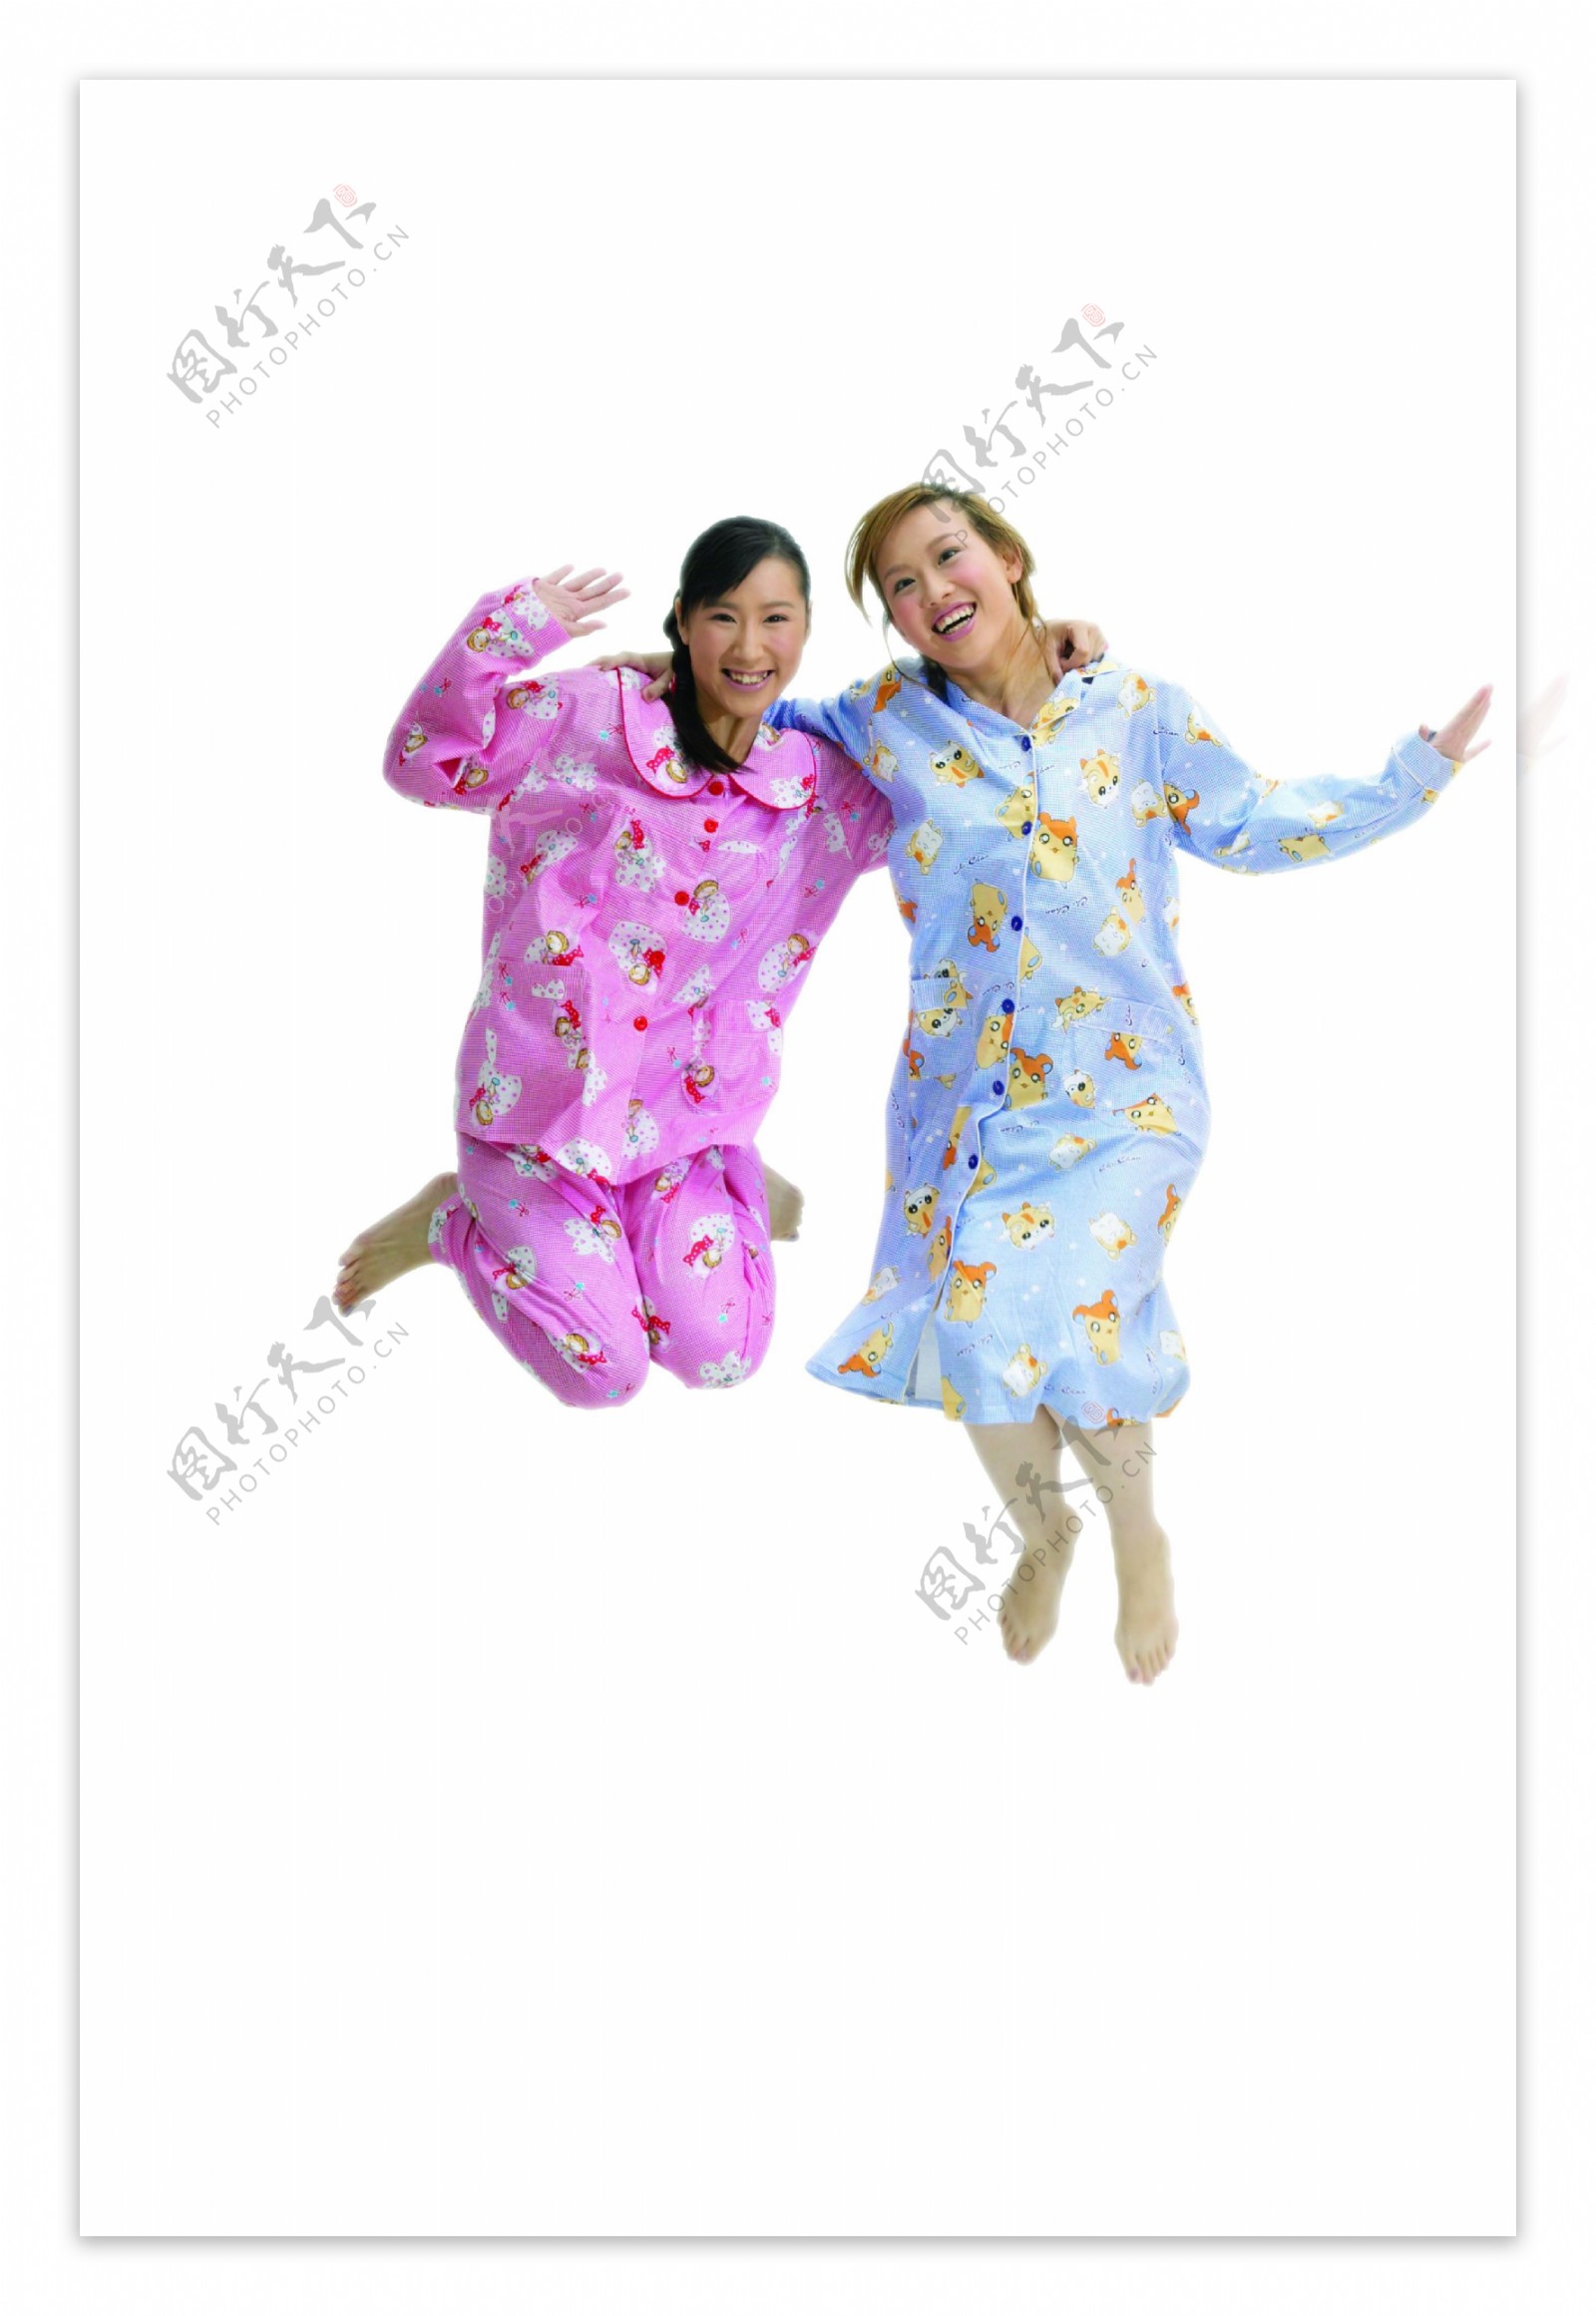 穿着睡衣跳起的两少女图片